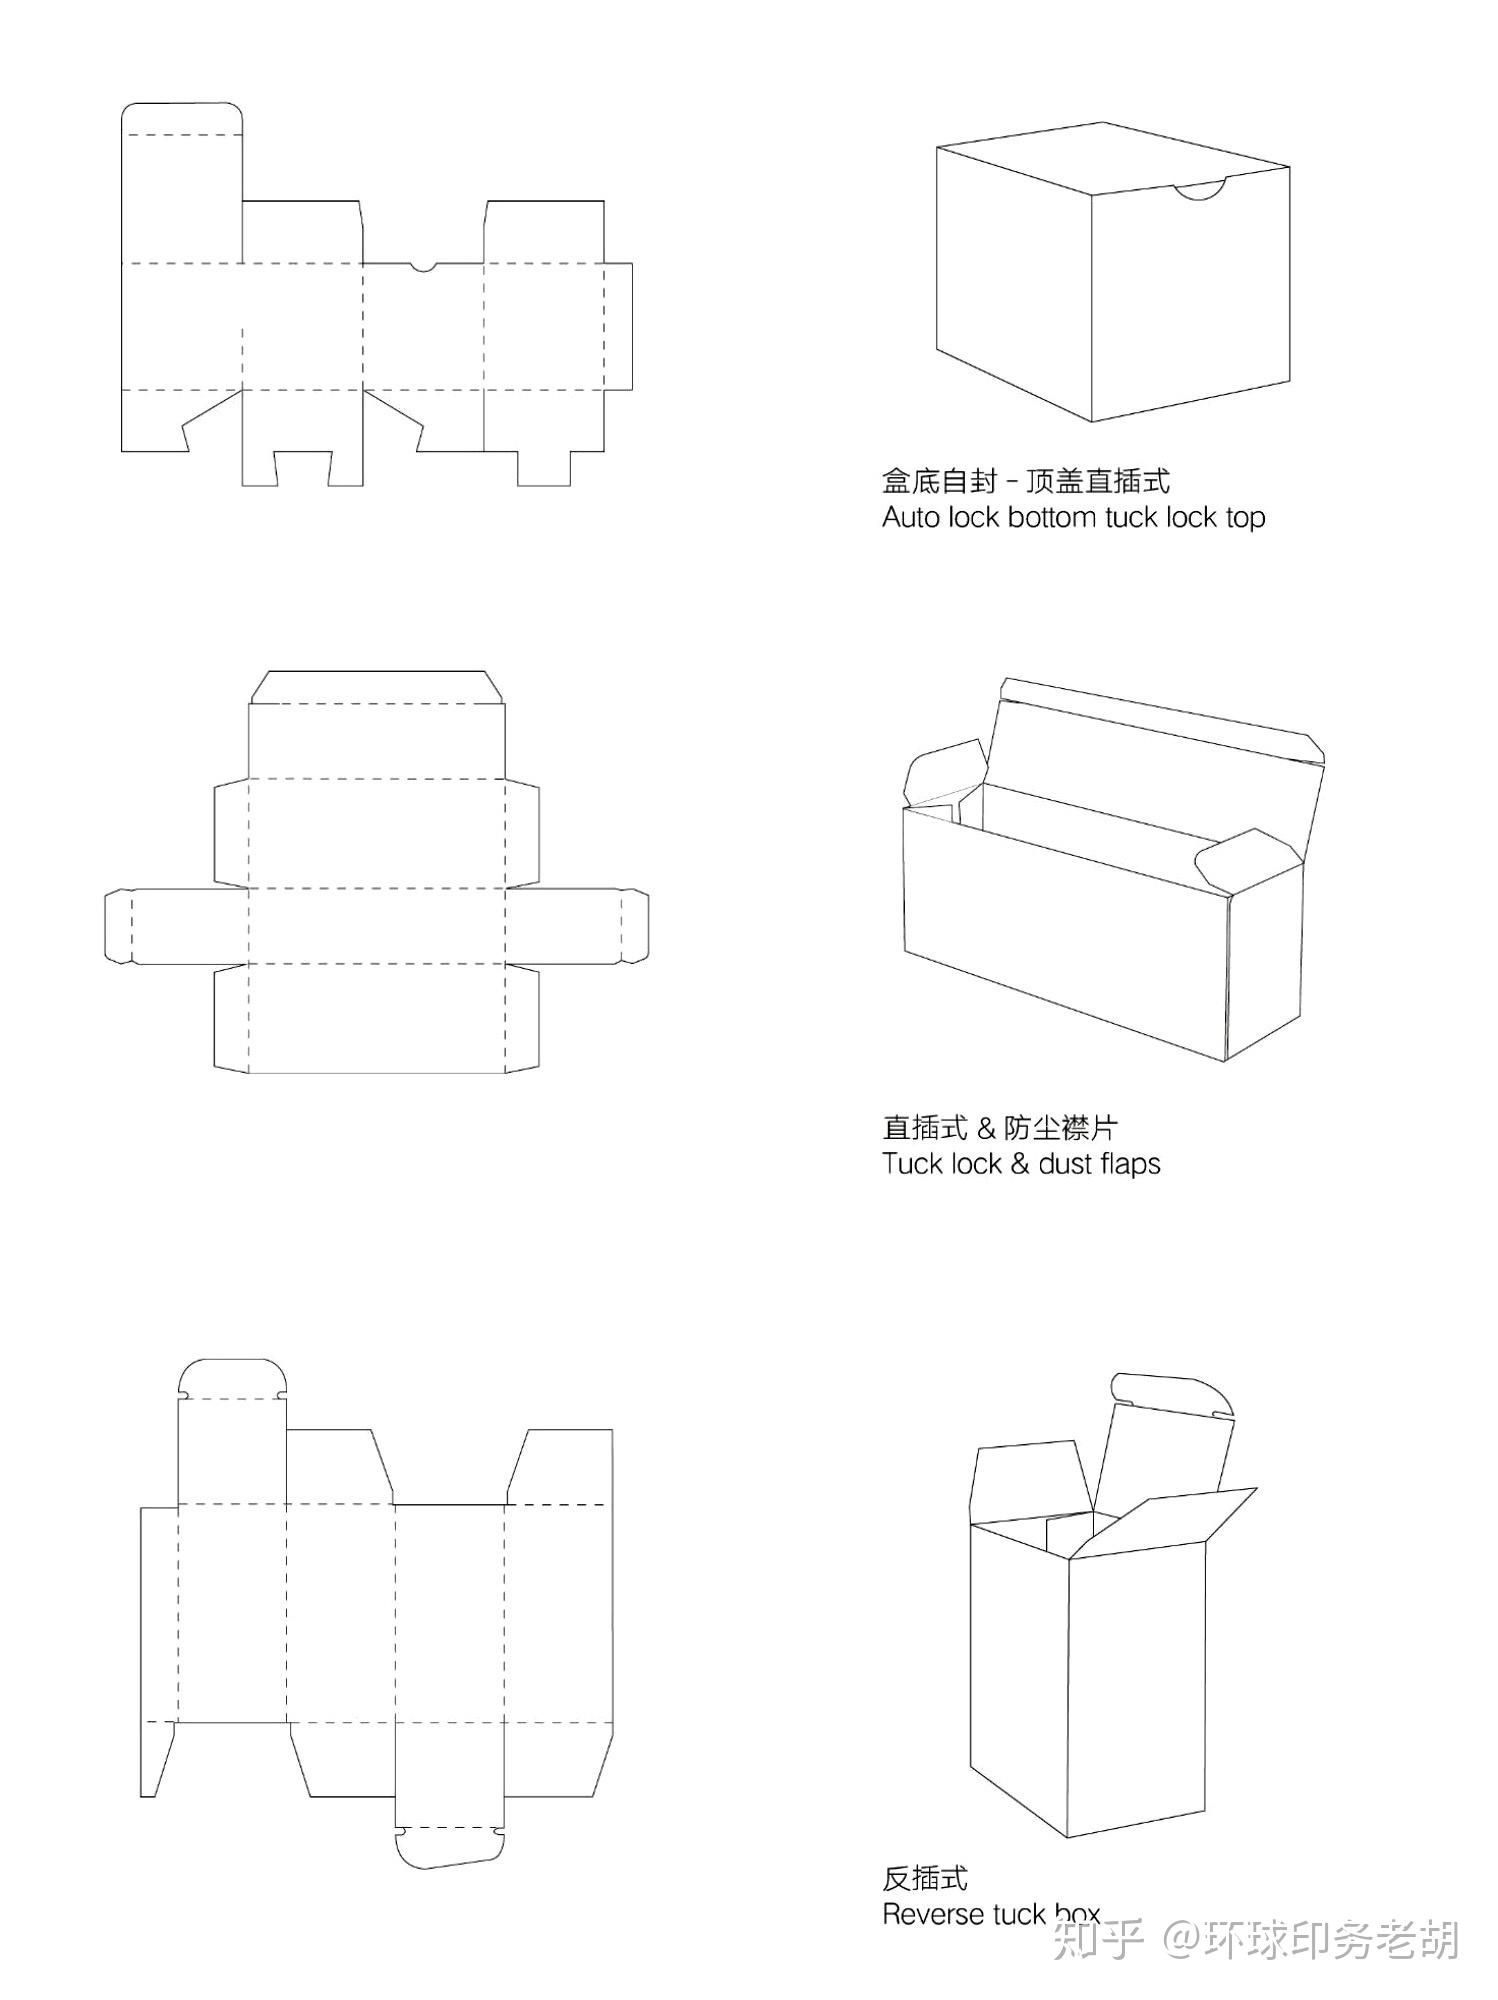 6视角盒子样机大小不同的立方体盒子阵列摆放方式